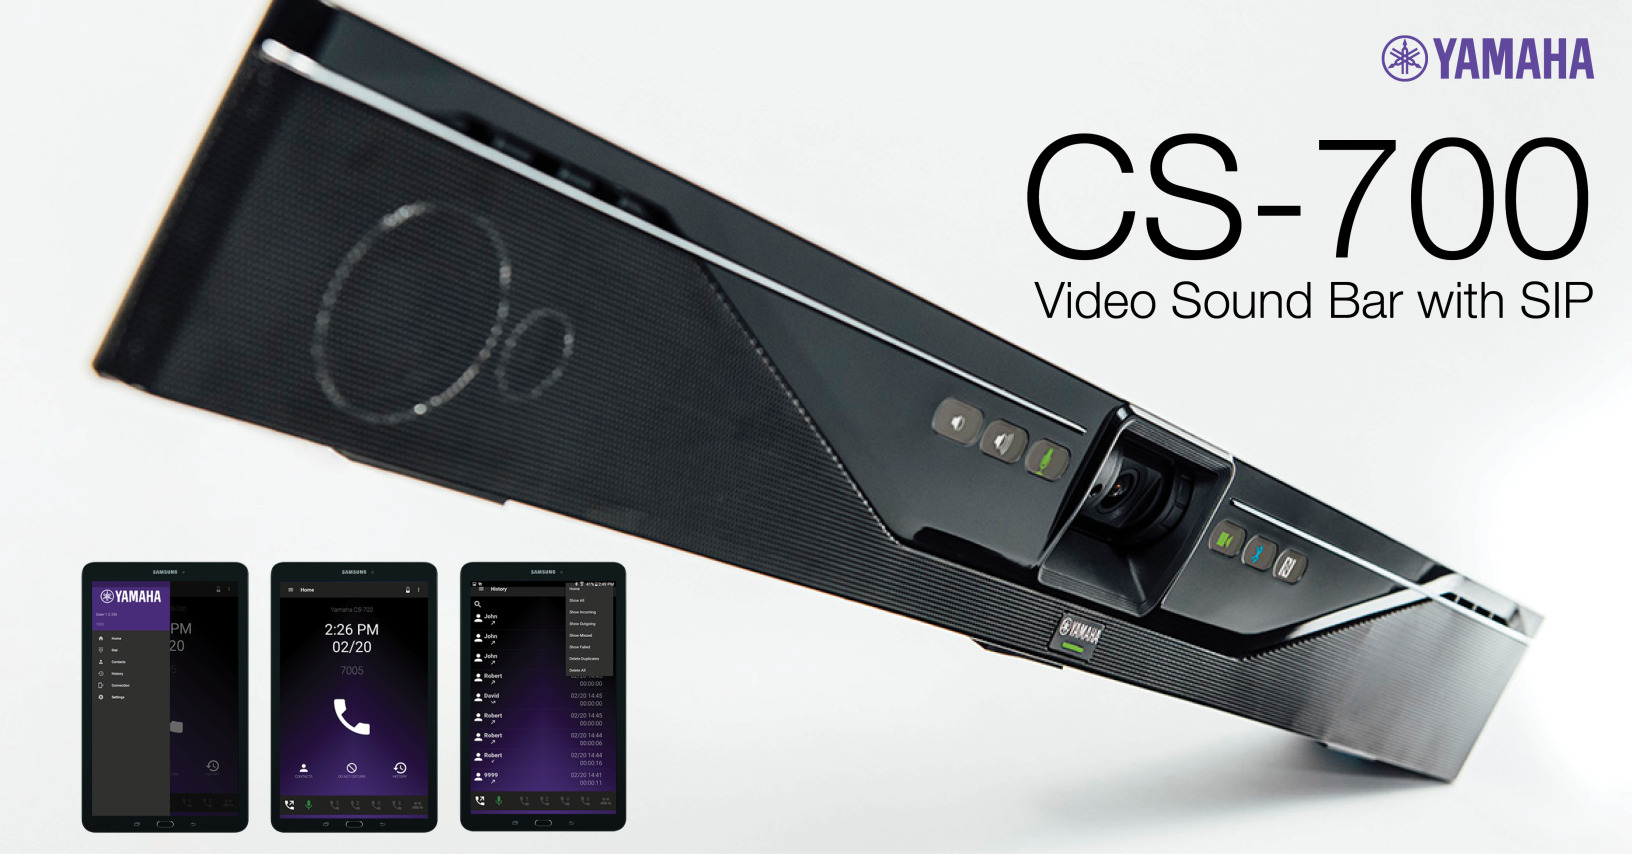 Дизайн видеосаундбара CS-700-SP от Yamaha